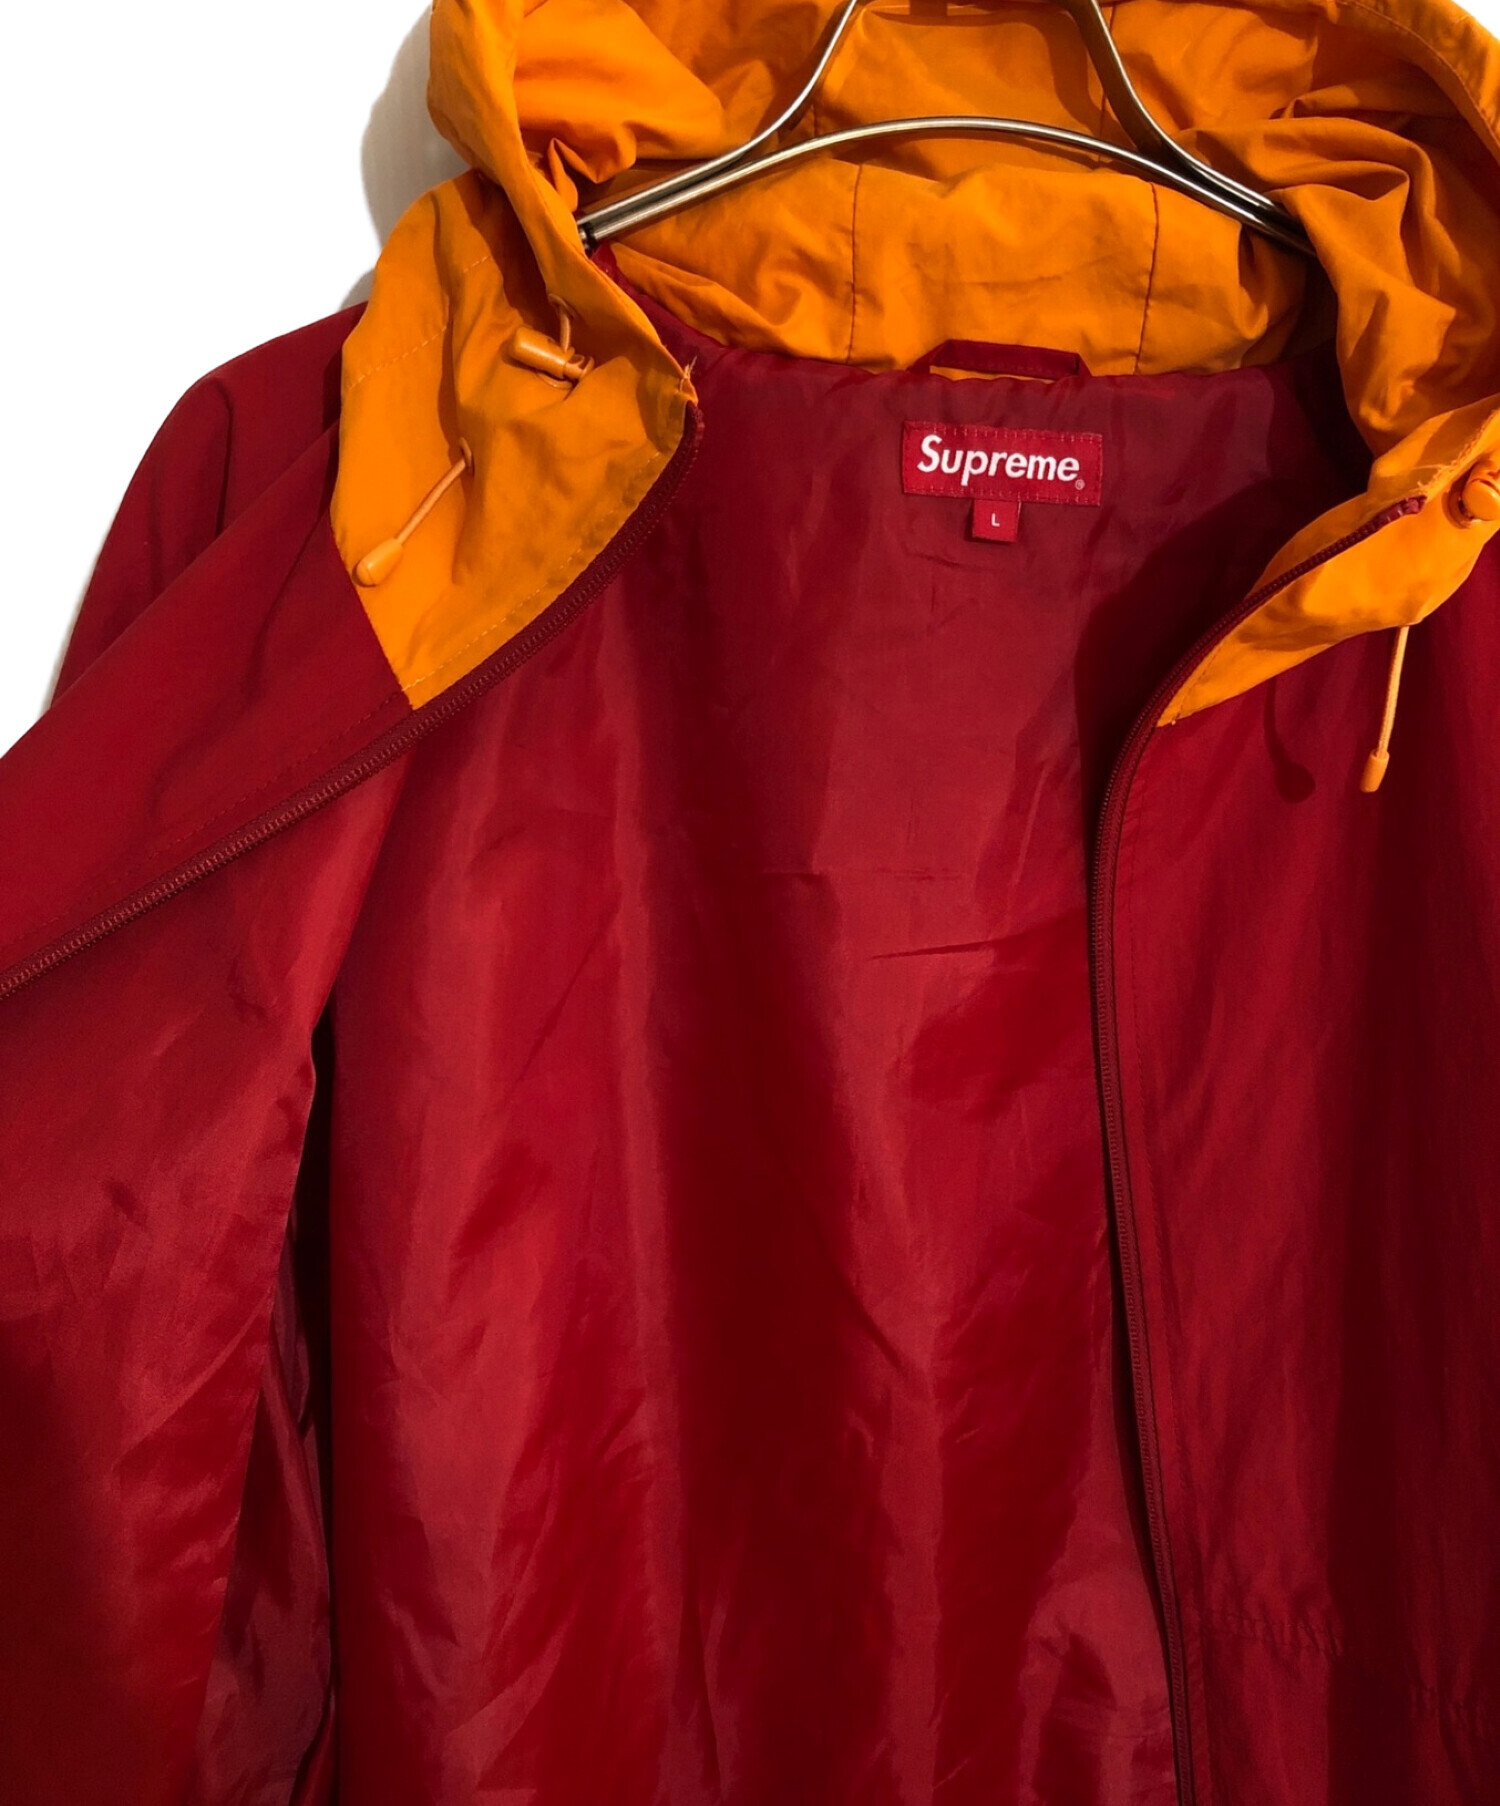 Supreme (シュプリーム) Lightweight Nylon Hooded Jacket/ライトウェイトナイロンフーデットジャケット  レッド×オレンジ サイズ:SIZE L